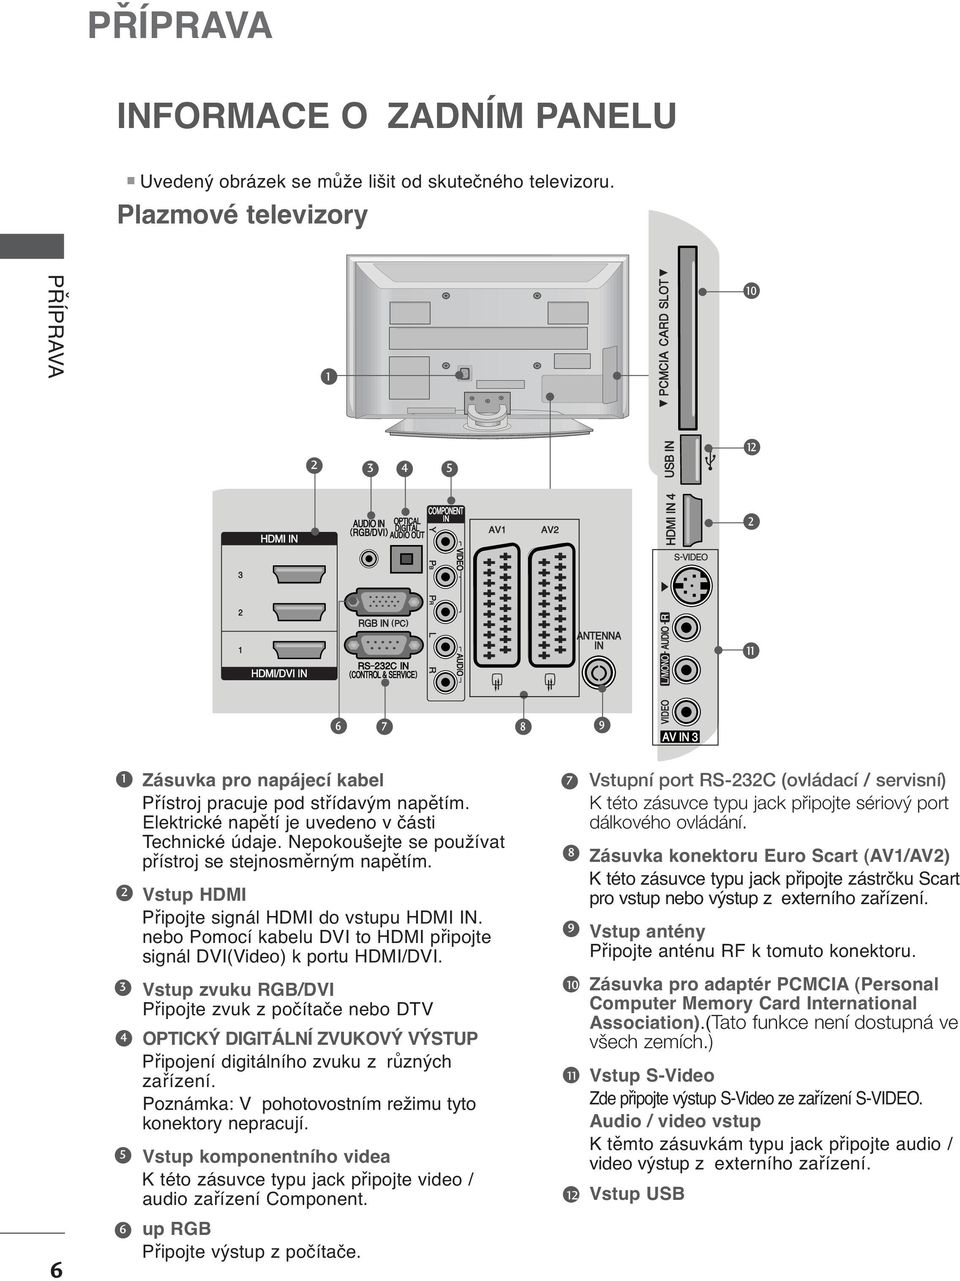 nebo Pomocí kabelu DVI to HDMI připojte signál DVI(Video) k portu HDMI/DVI. 7 8 9 Vstupní port RS-C (ovládací / servisní) K této zásuvce typu jack pfiipojte sériov port dálkového ovládání.